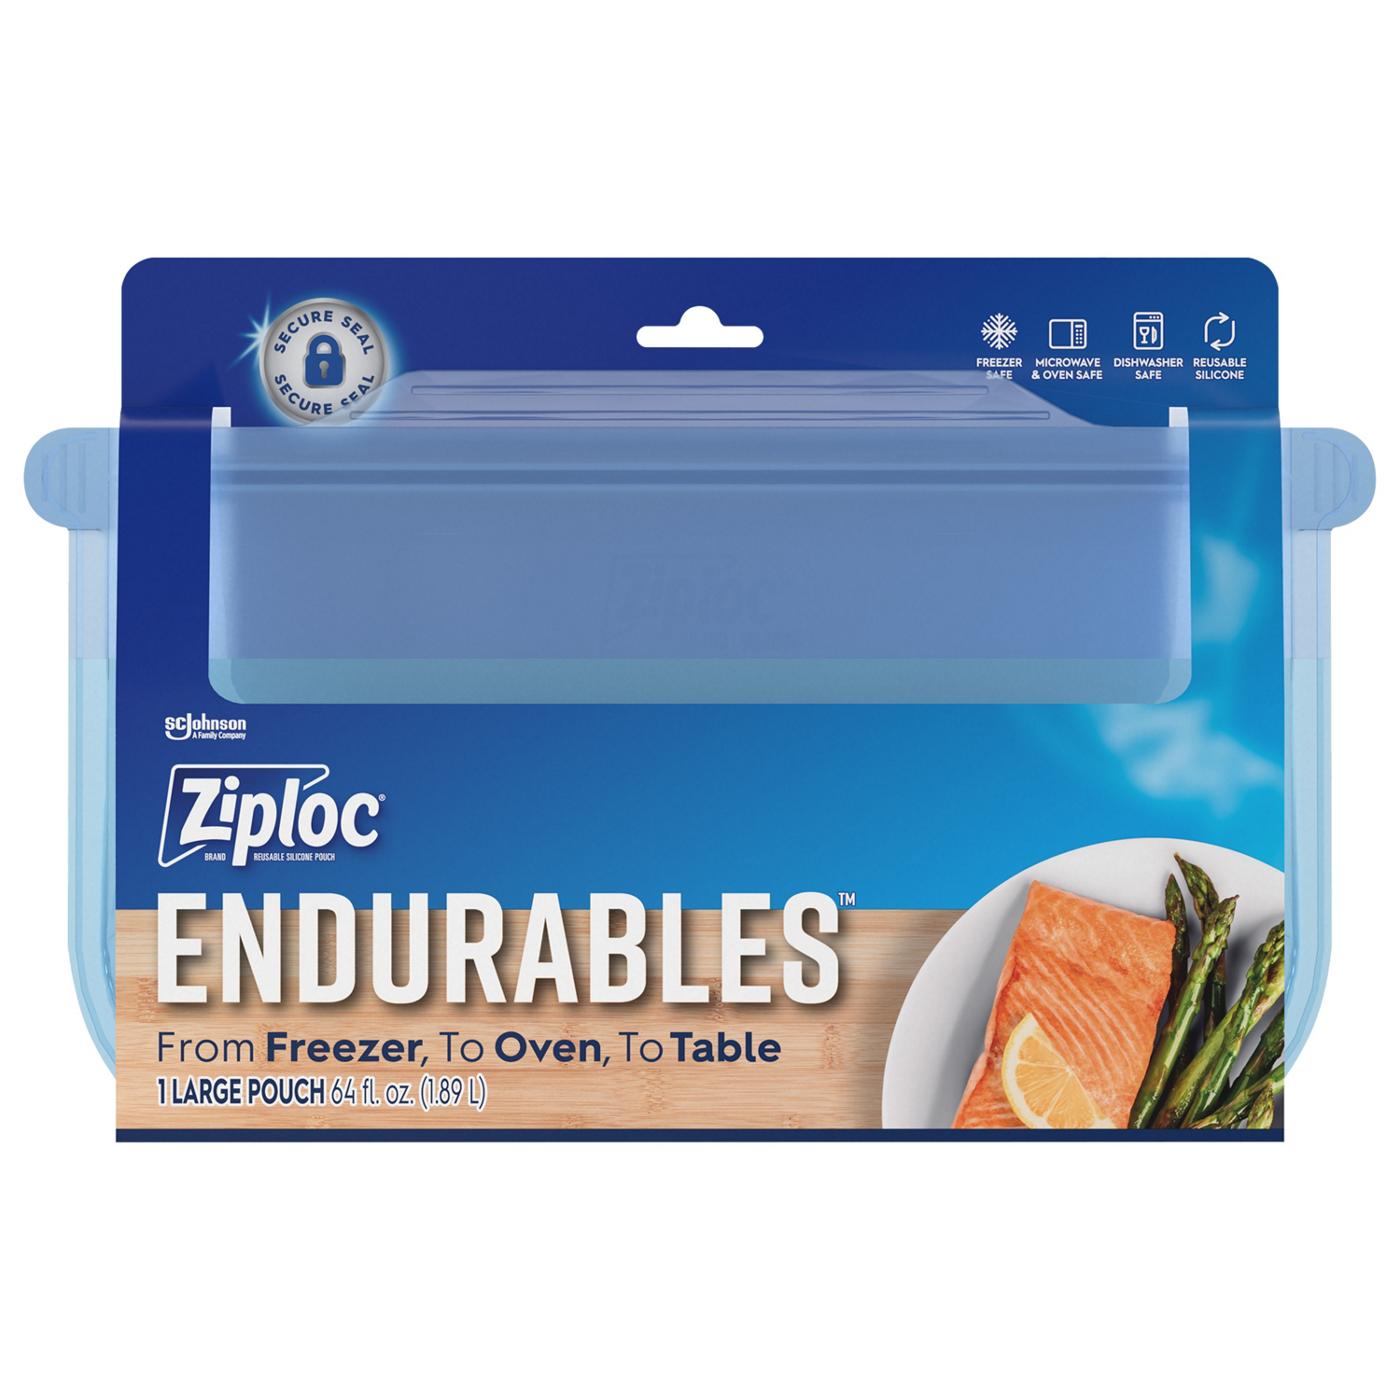 Ziploc Ziploc Endurables Pouch, Large Reusable Silicone Food Storage Bag, 64 fl oz; image 1 of 4